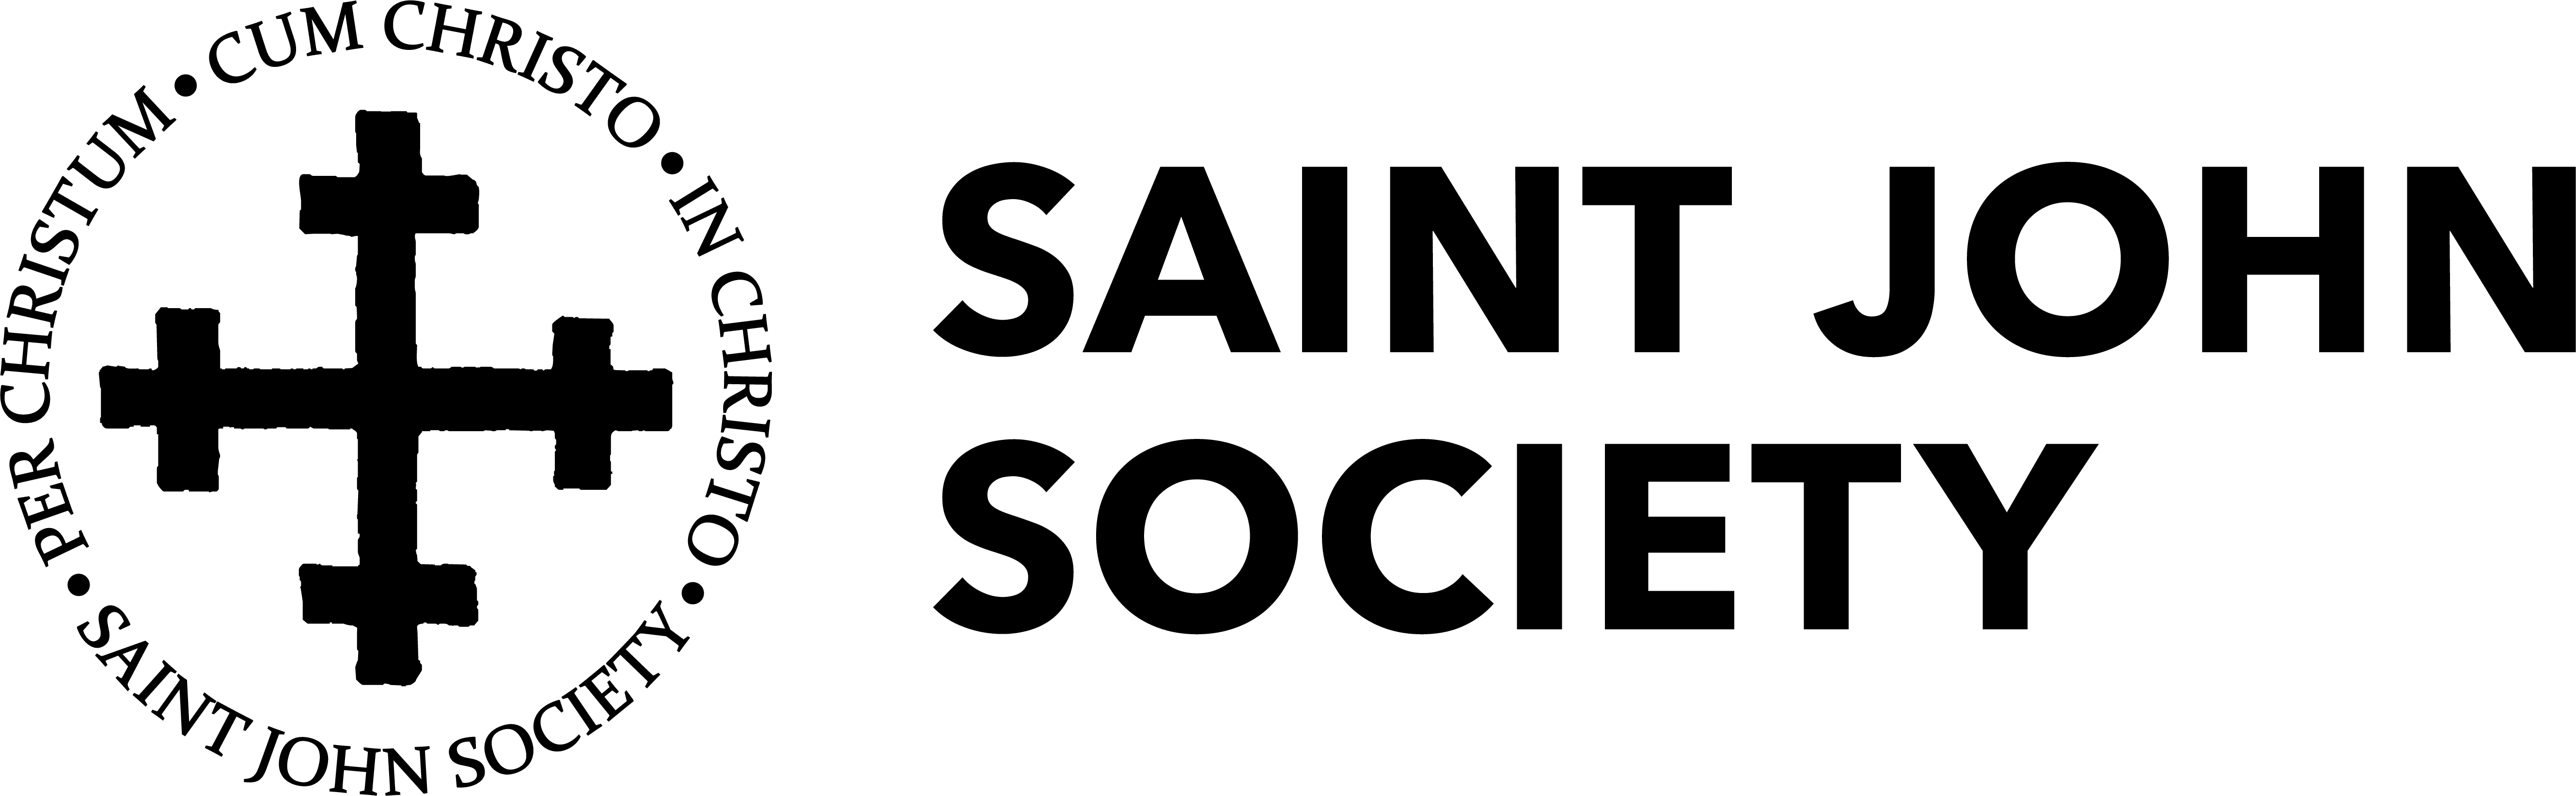 saint john society logo black